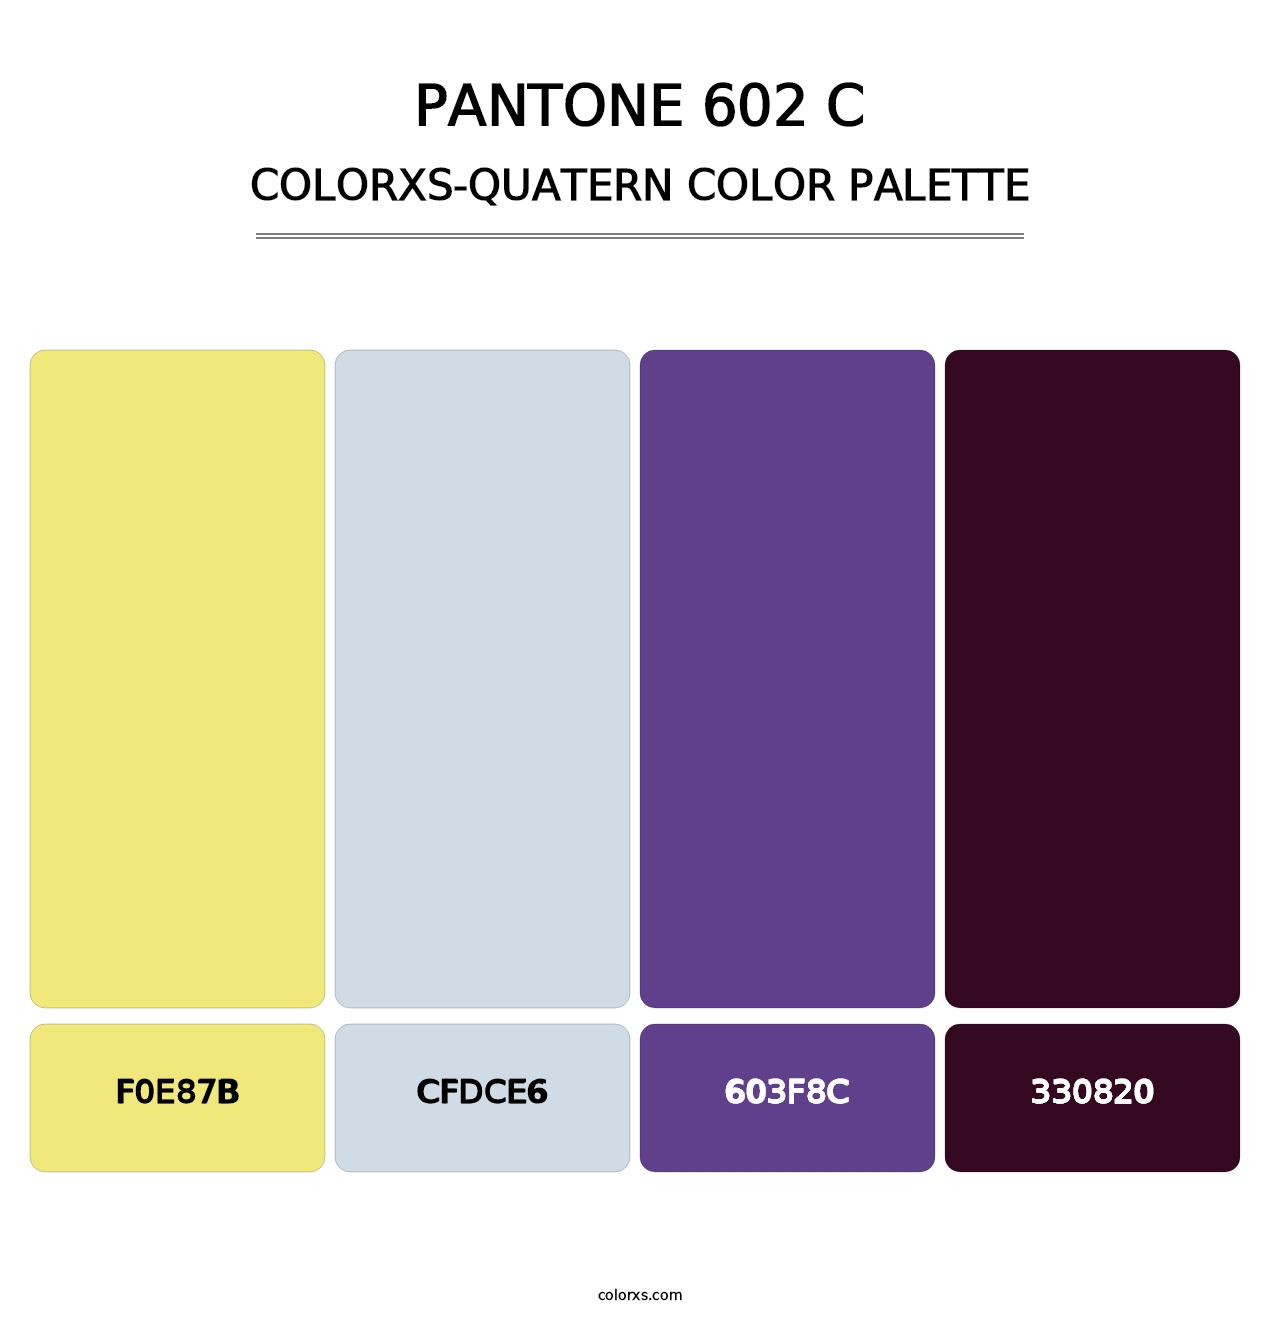 PANTONE 602 C - Colorxs Quatern Palette